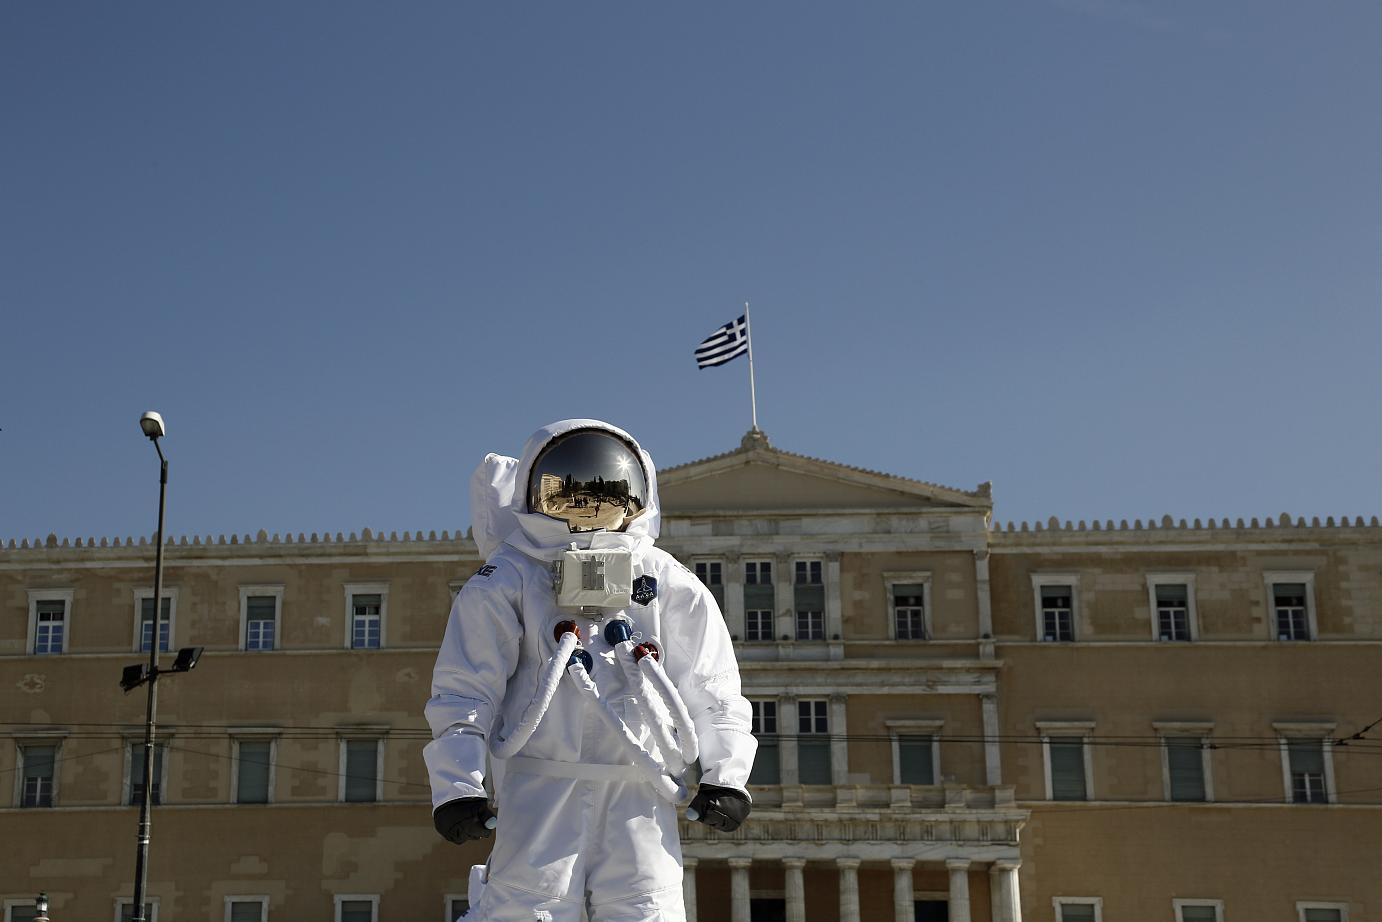 Η Ελλάδα το 2013 μέσα από ένα συναρπαστικό φωτογραφικό άλμπουμ [εικόνες] | iefimerida.gr 6